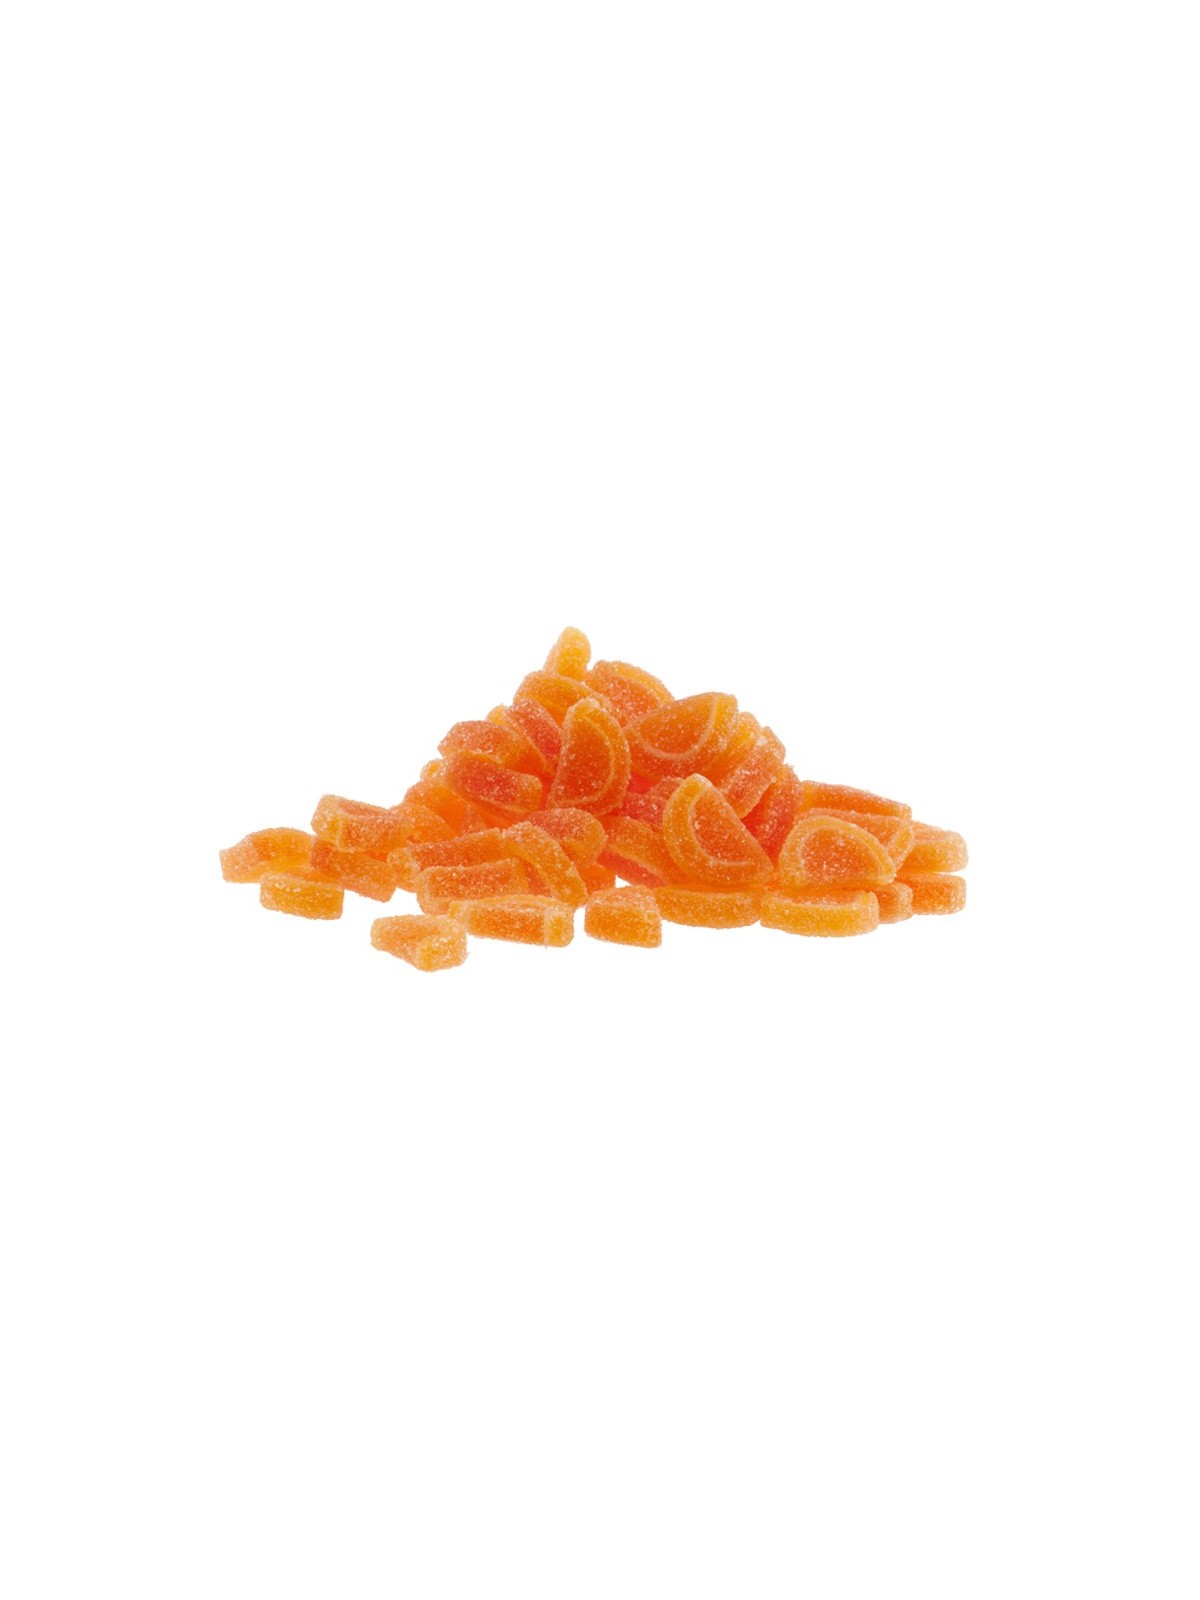 DeKora - Gelee Dekor - Mini Scheiben - Orange - 100g